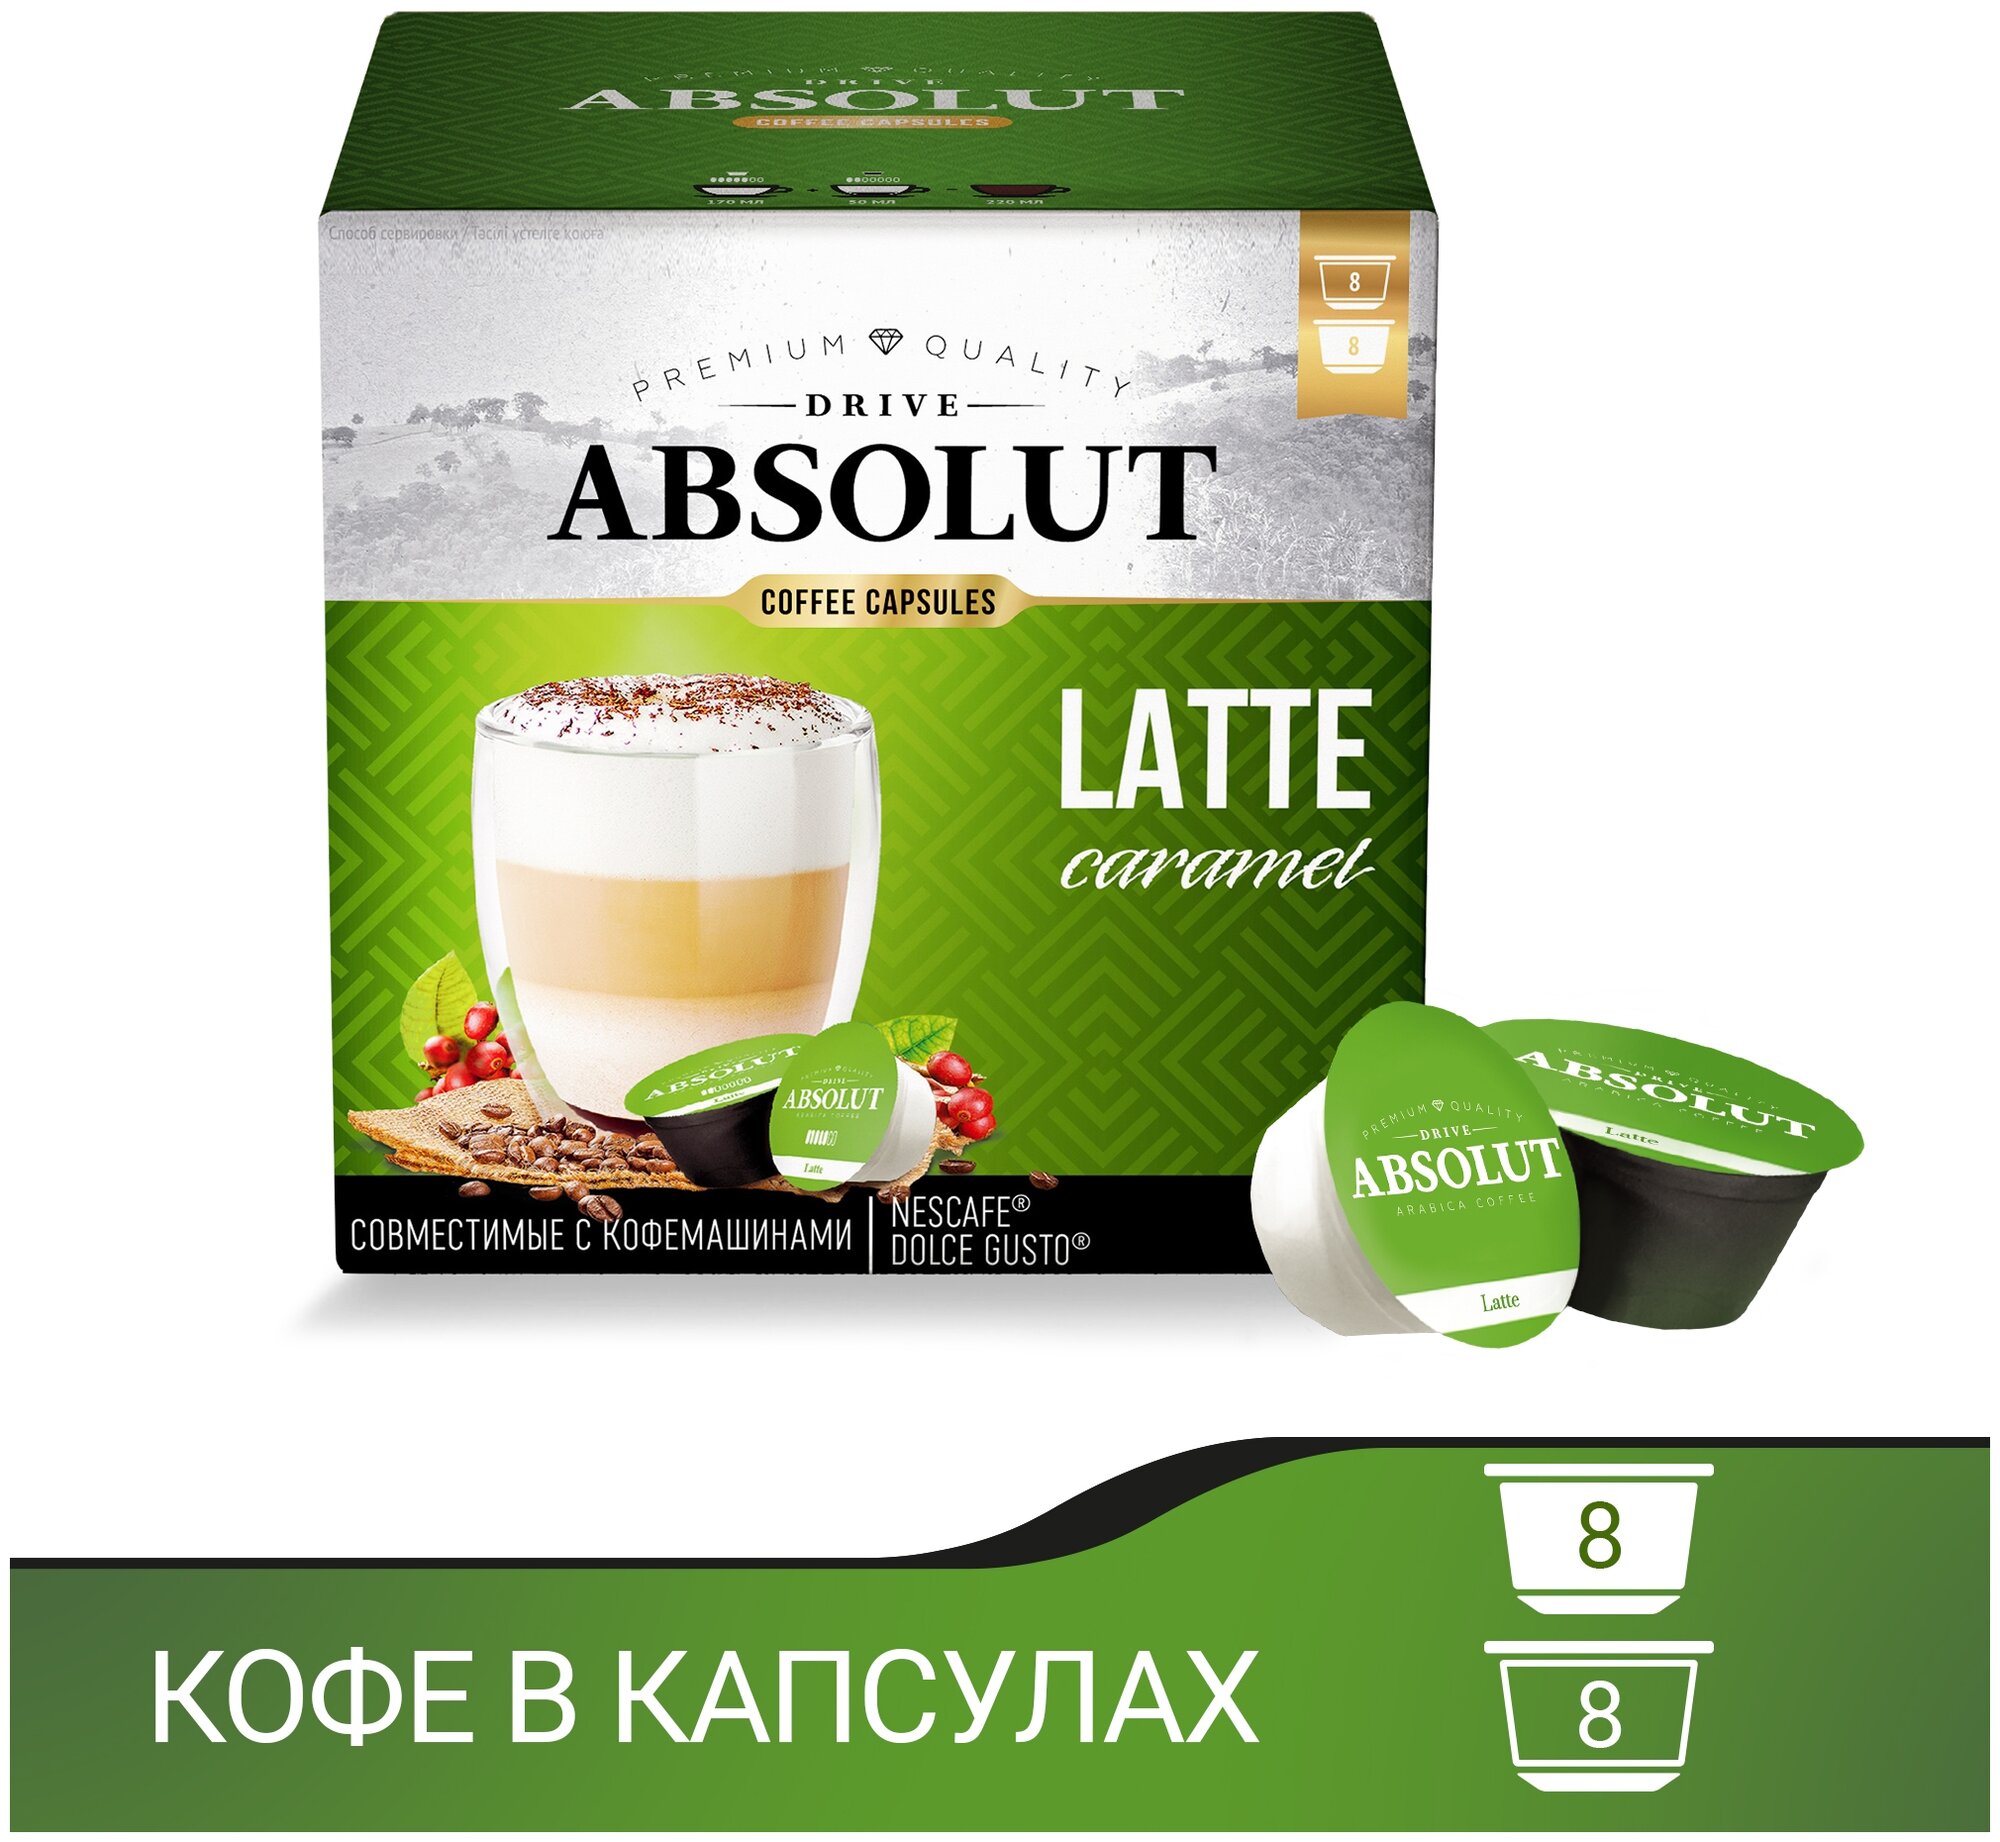 Кофе Absolut Drive Латте Маккиато, в капсулах для кофемашины Дольче Густо (Dolce Gusto) 6 коробок по 16 капсул (96 капсул) - фотография № 12